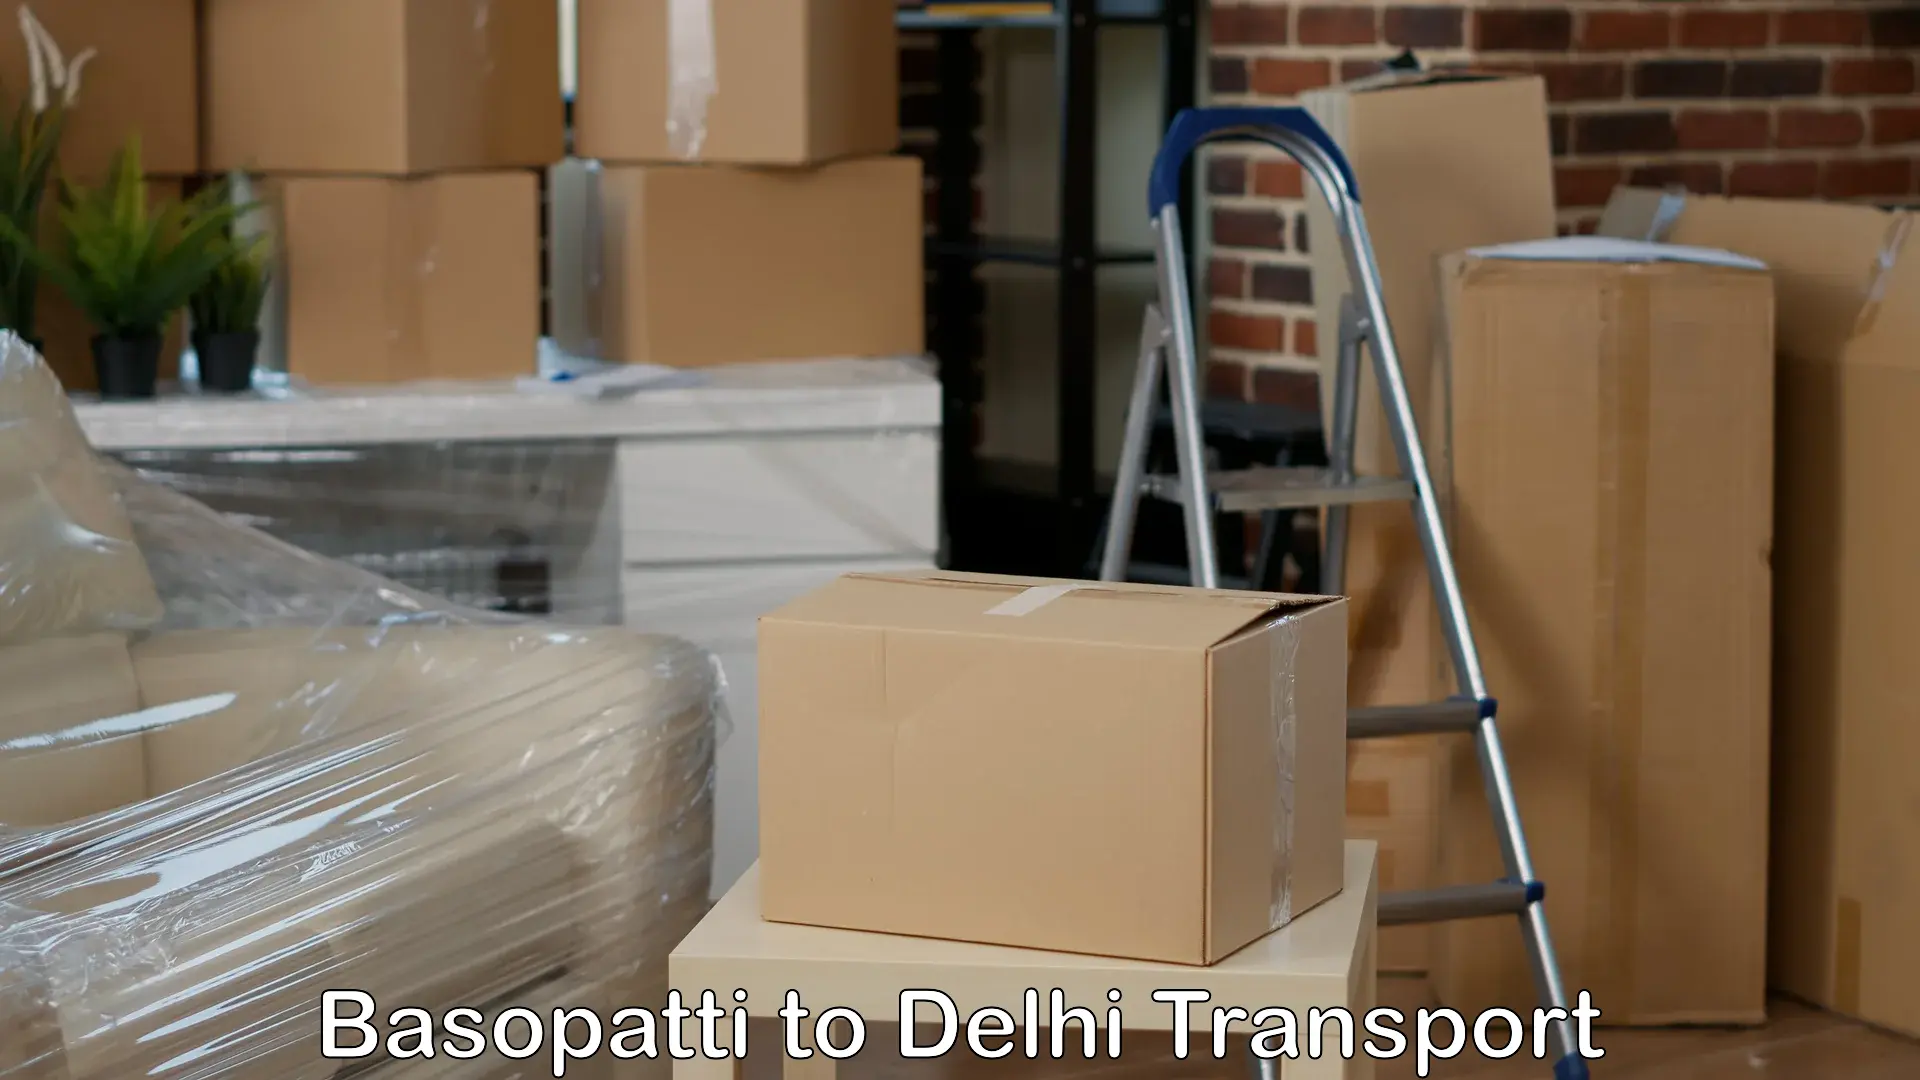 Bike transport service Basopatti to Delhi